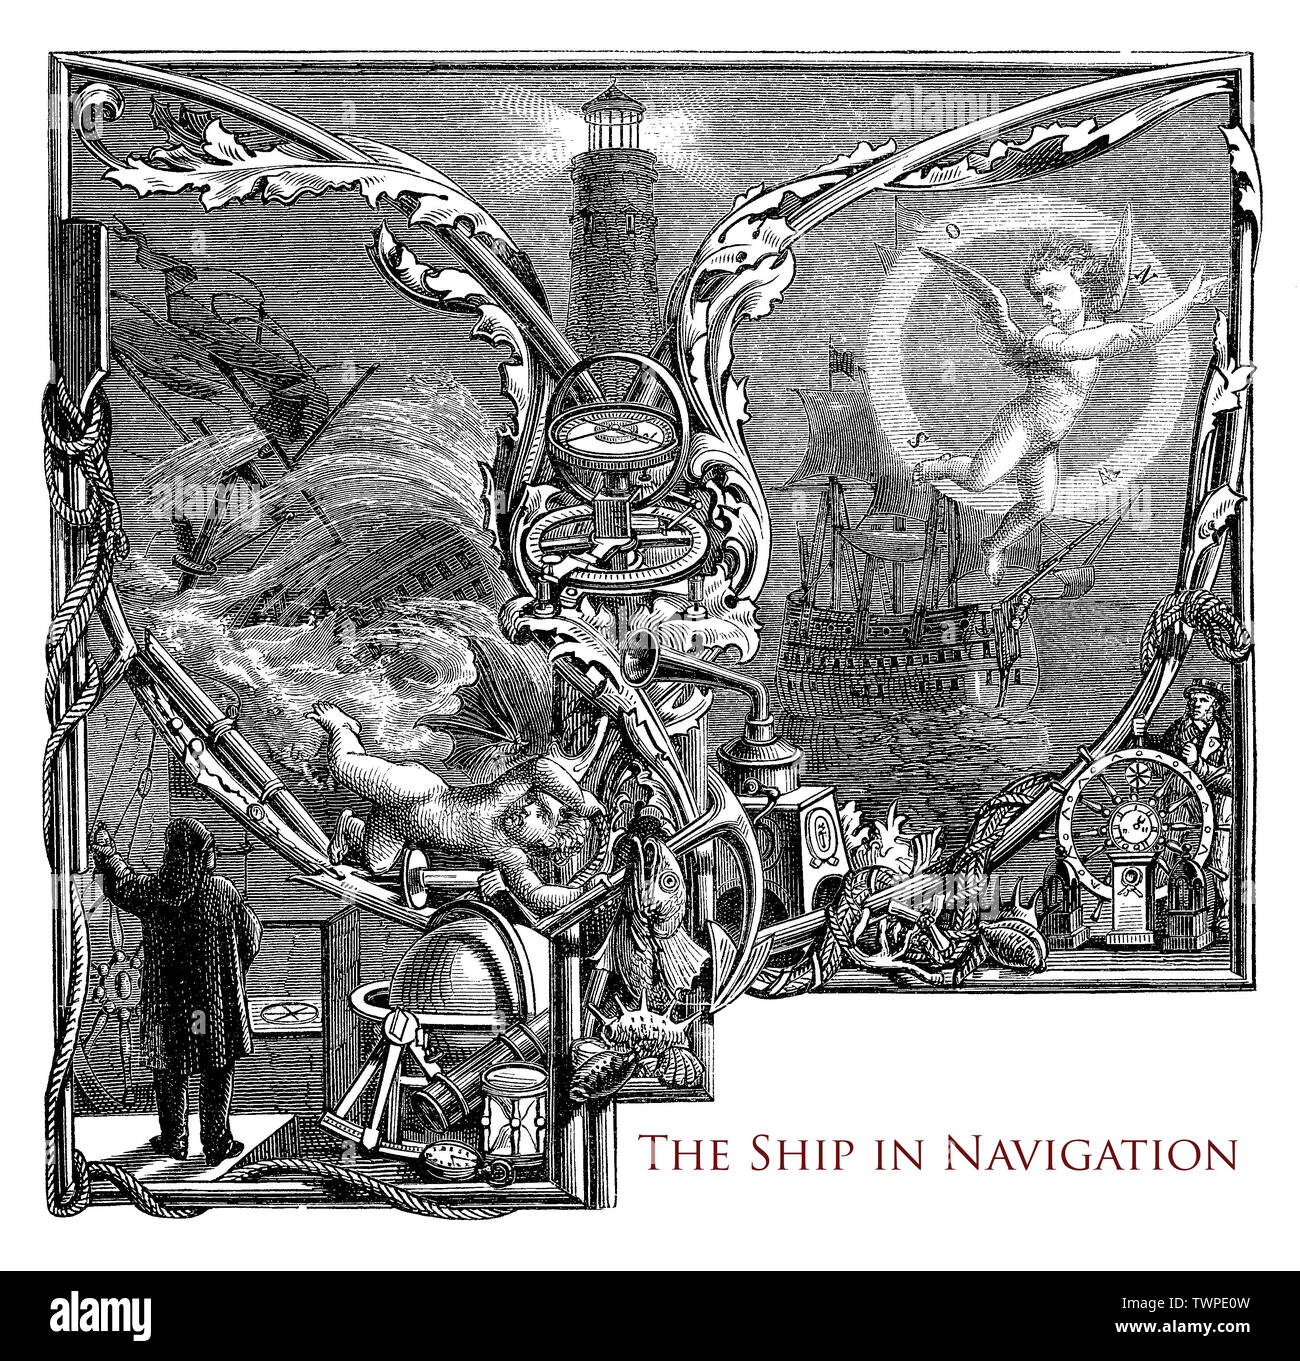 Typografie: das Schiff in navigation Kapitel aus dem 19. Jahrhundert, maritime Ausrüstung, ein Leuchtturm, Segelschiffe, Segler auf das Ruder, Sturm und schönem Wetter, mythologische Putten Stockfoto